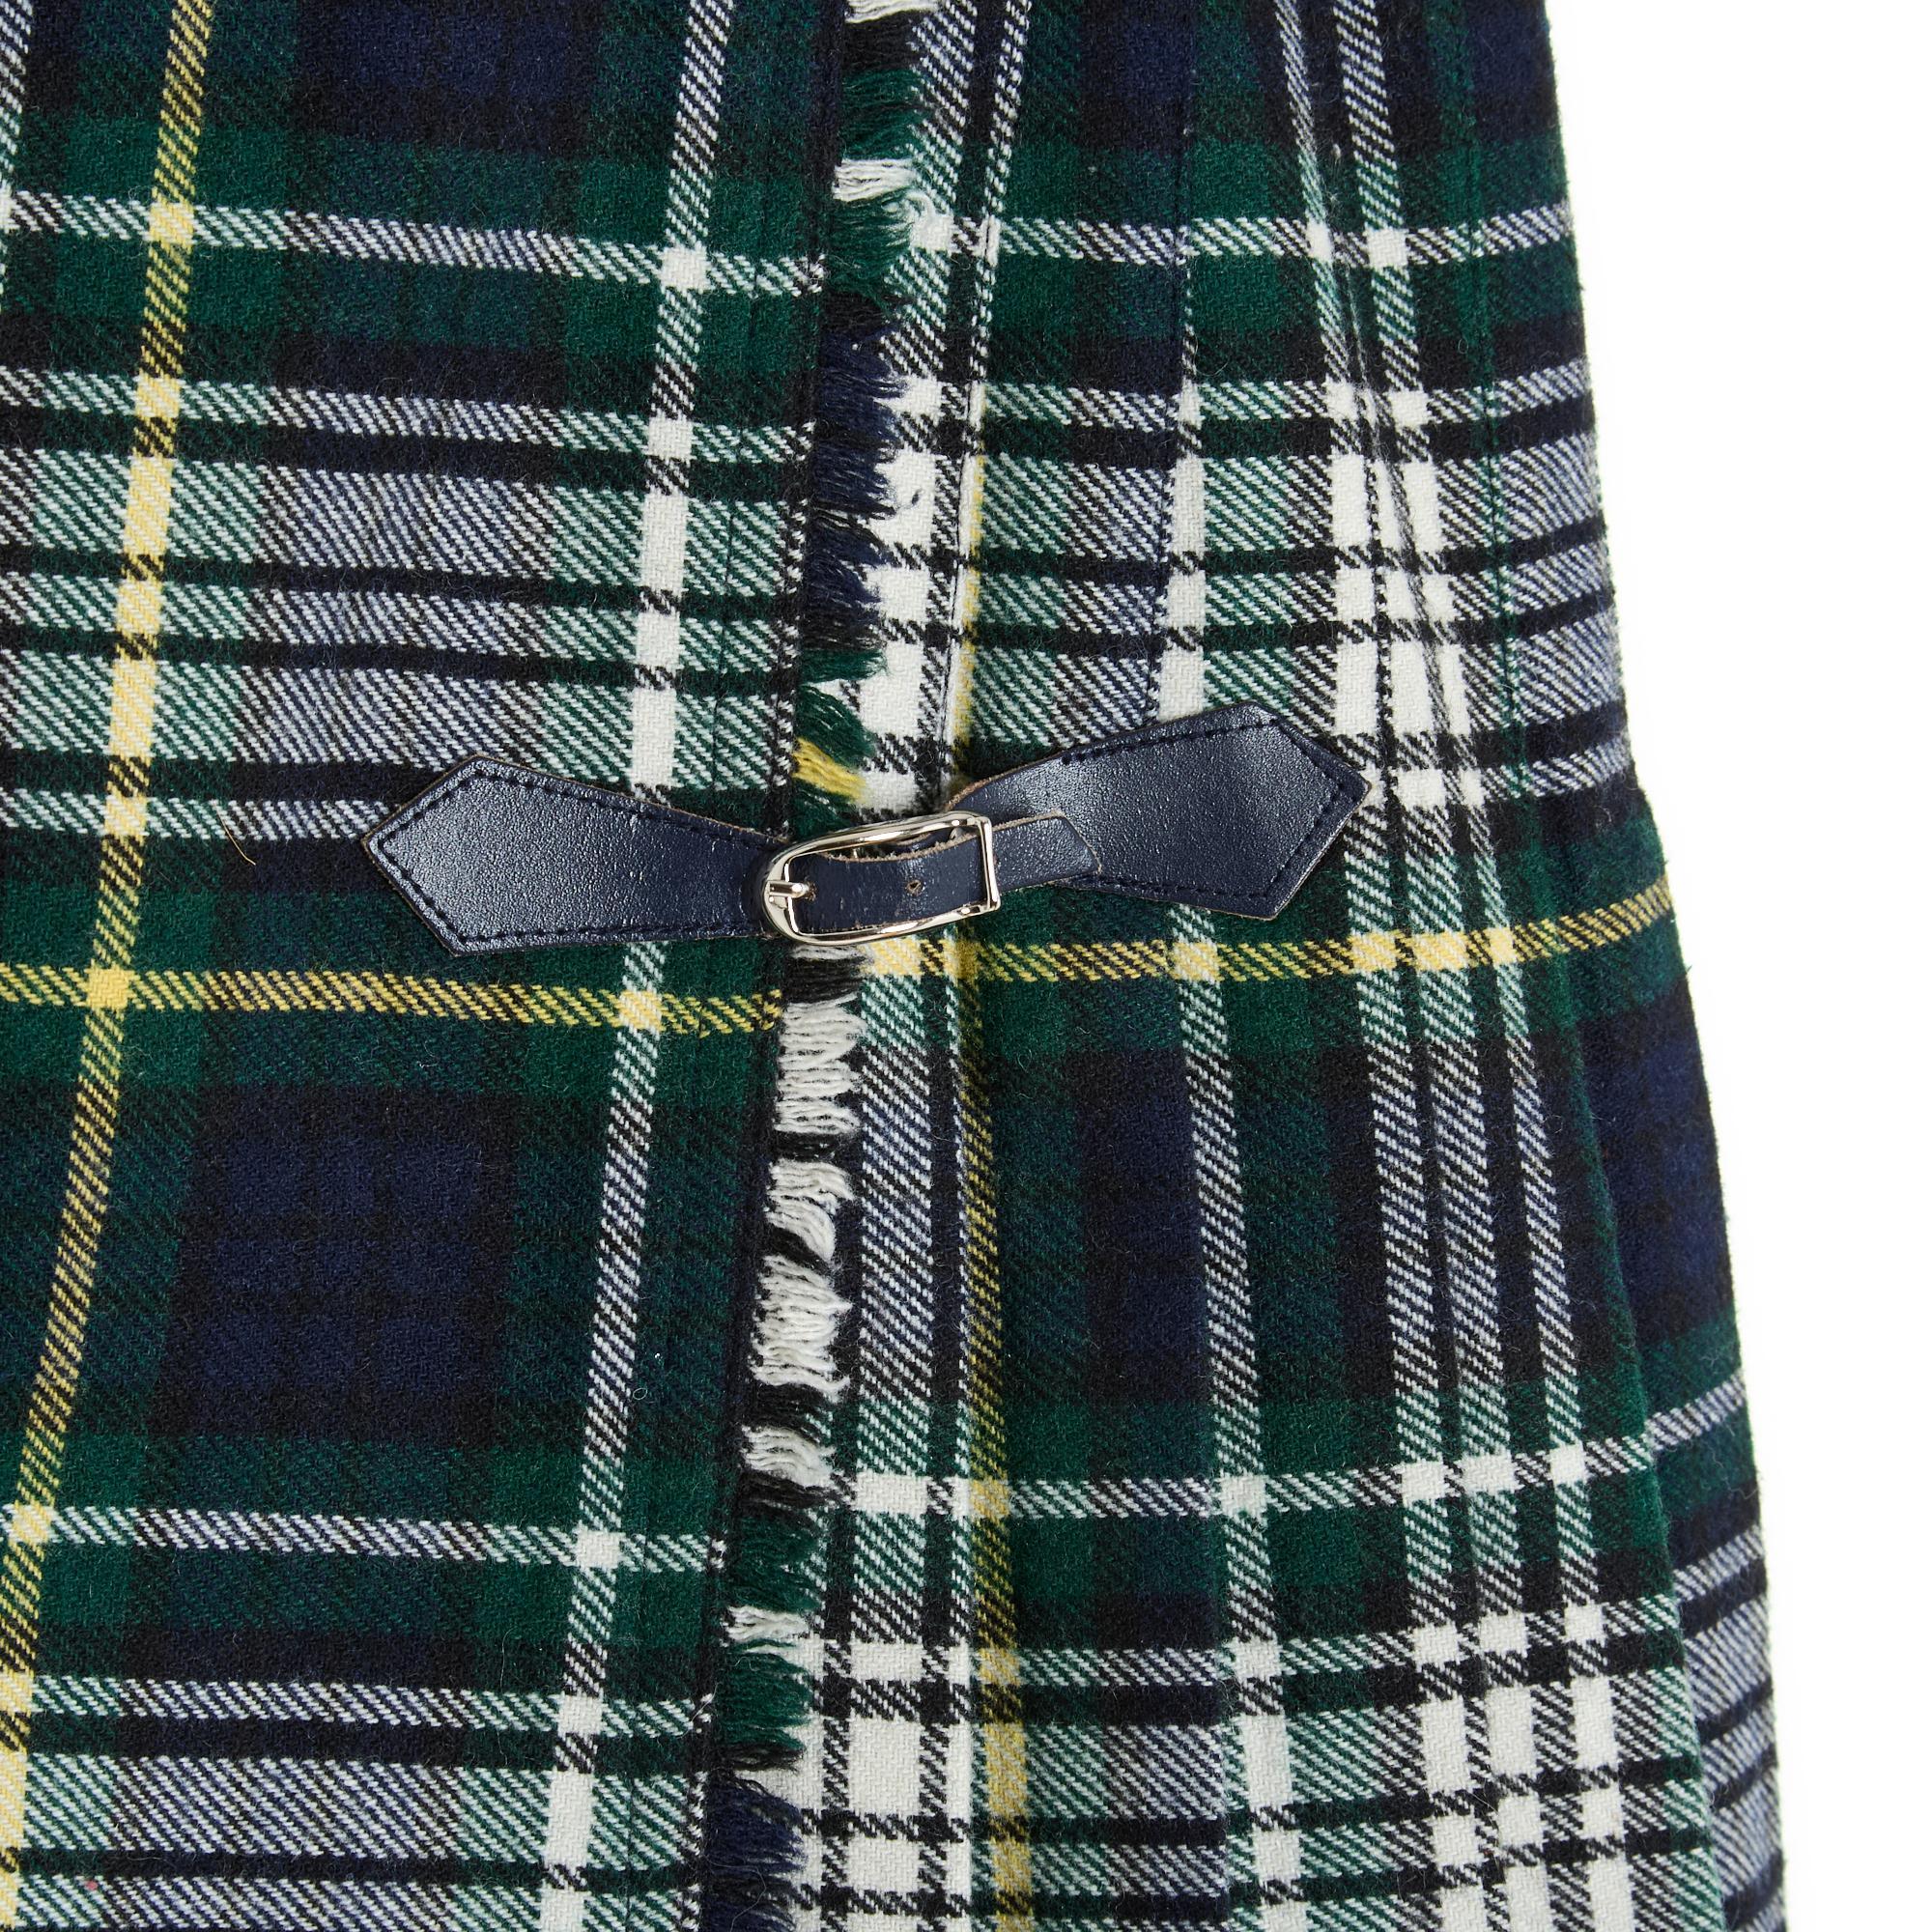 Jupe courte et plissée, de style kilt, en laine mélangée à motif écossais ou à carreaux, dans les tons bleu marine, vert et écru. La taille se ferme à l'aide d'un bouton sur un côté et de deux pattes en cuir bleu marine sur une boucle en métal